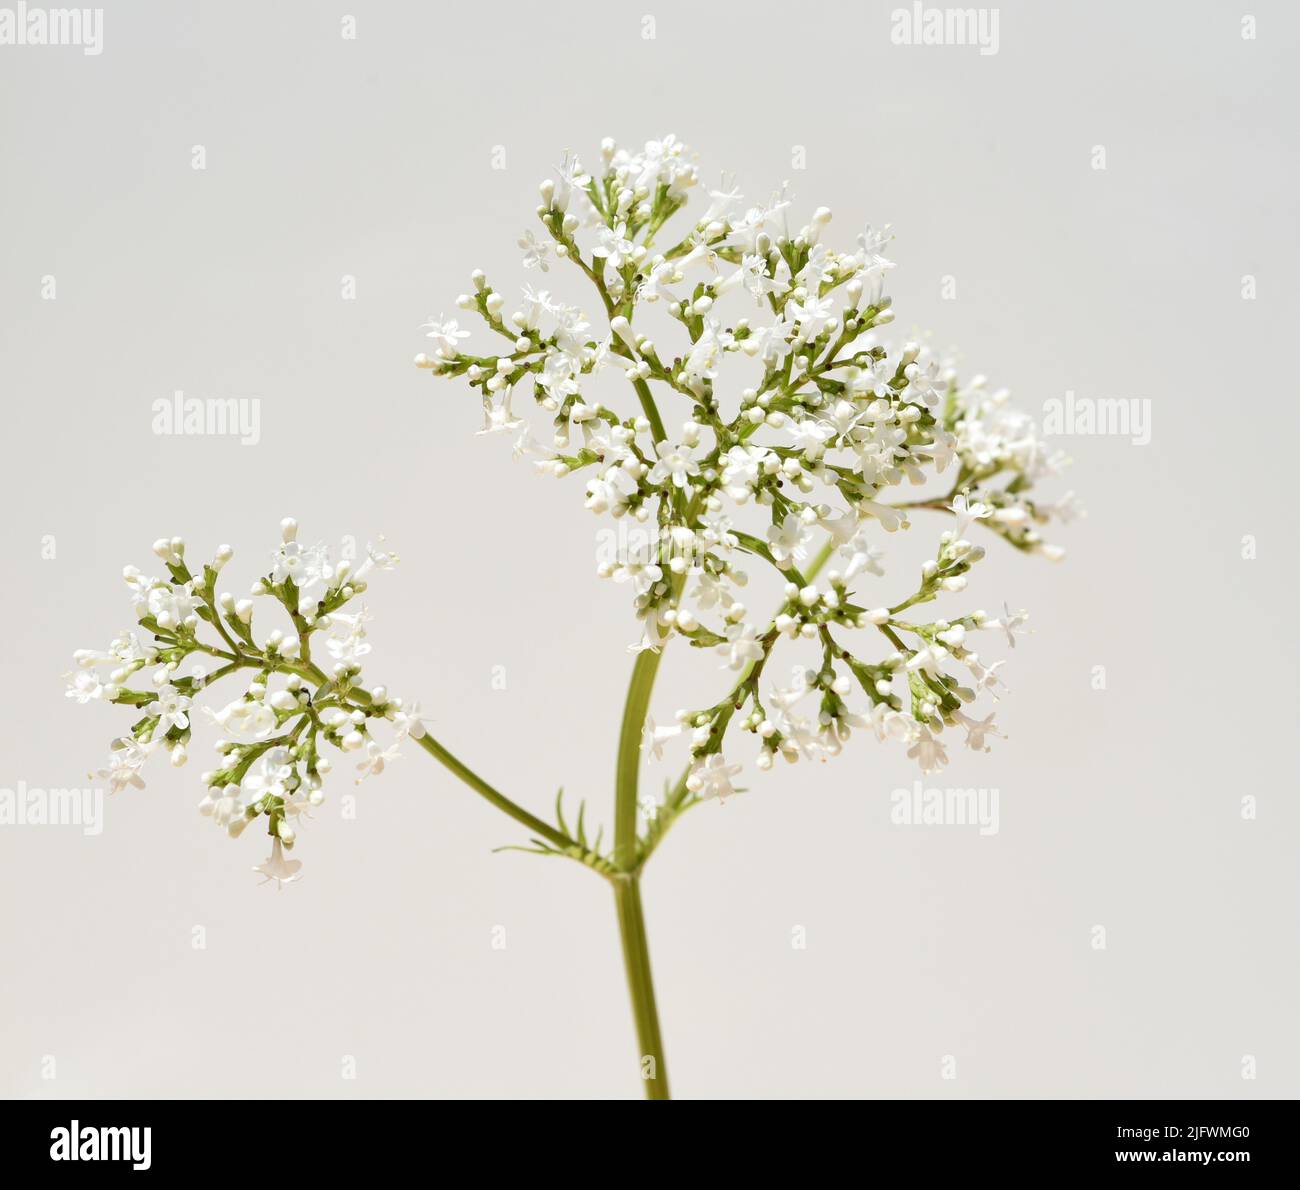 Baldrian, Valeriana officinalis, ist eine Wildpflanze mit weissen Blueten. SIE ist eine wichtige Heilpflanze und wird auch in der Medizin verwendet. V Foto de stock